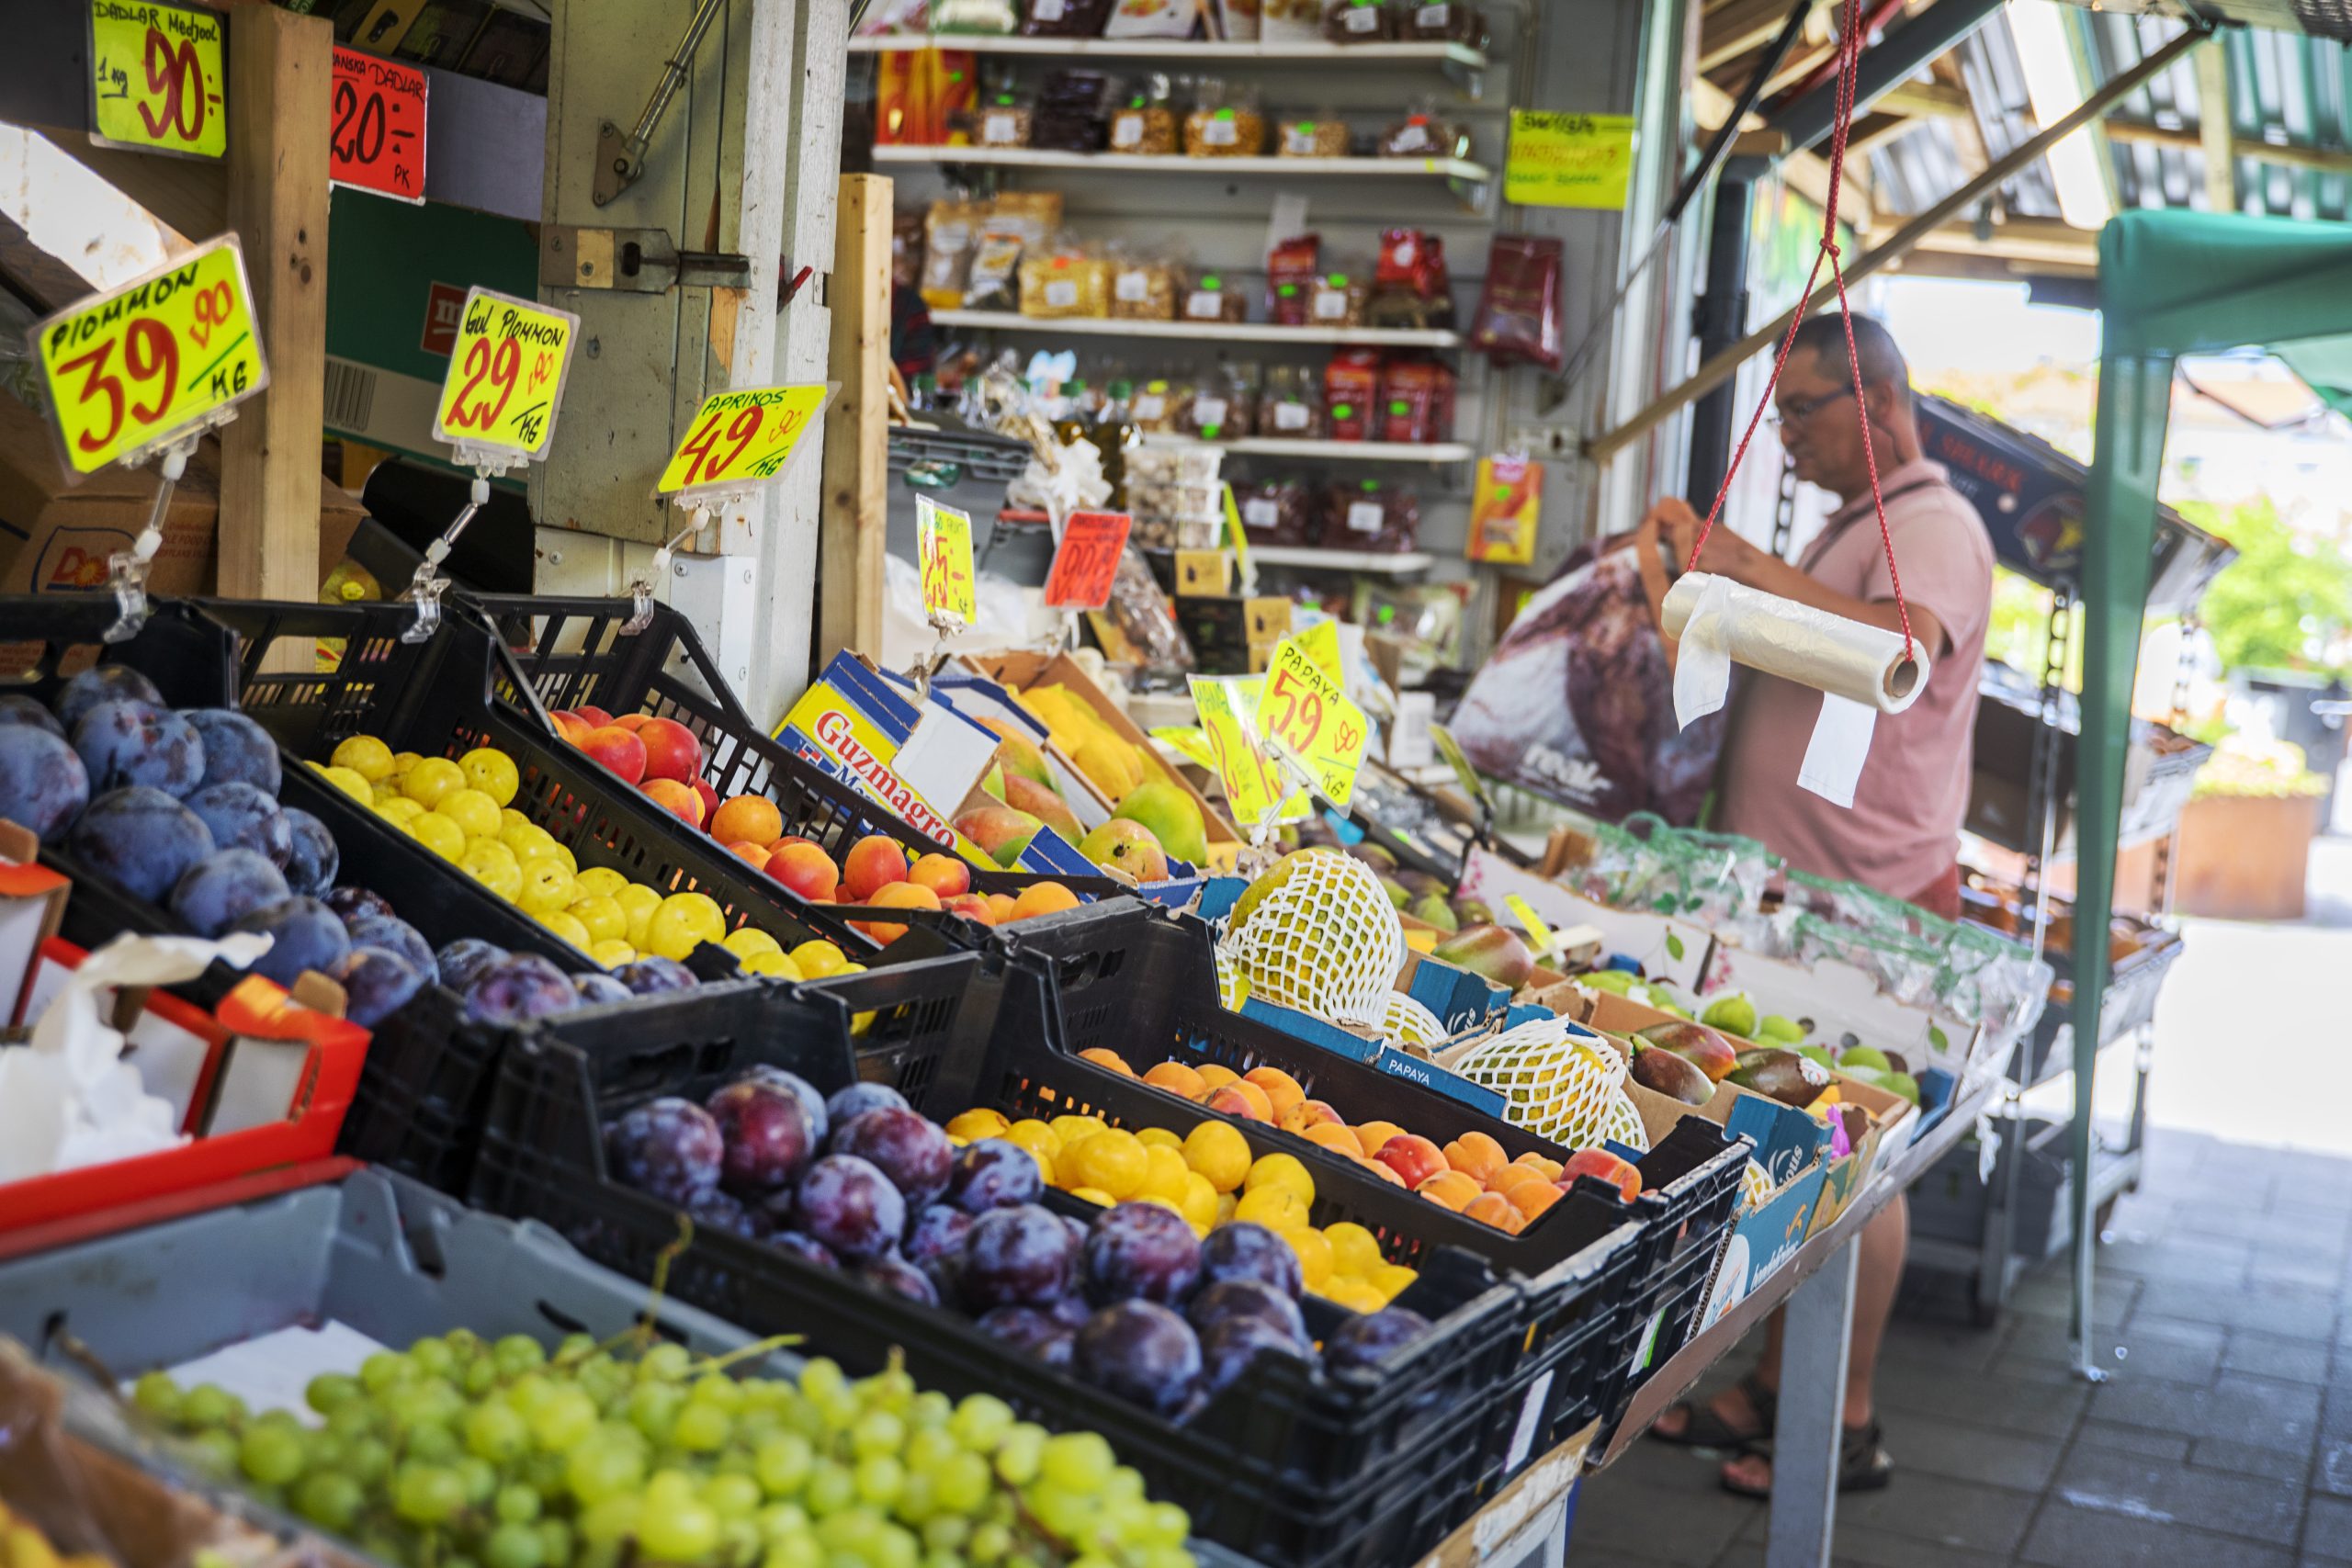 Frukthandel med plommon, vindruvor, mango och andra exotiska frukter med skyltar som visar priset.